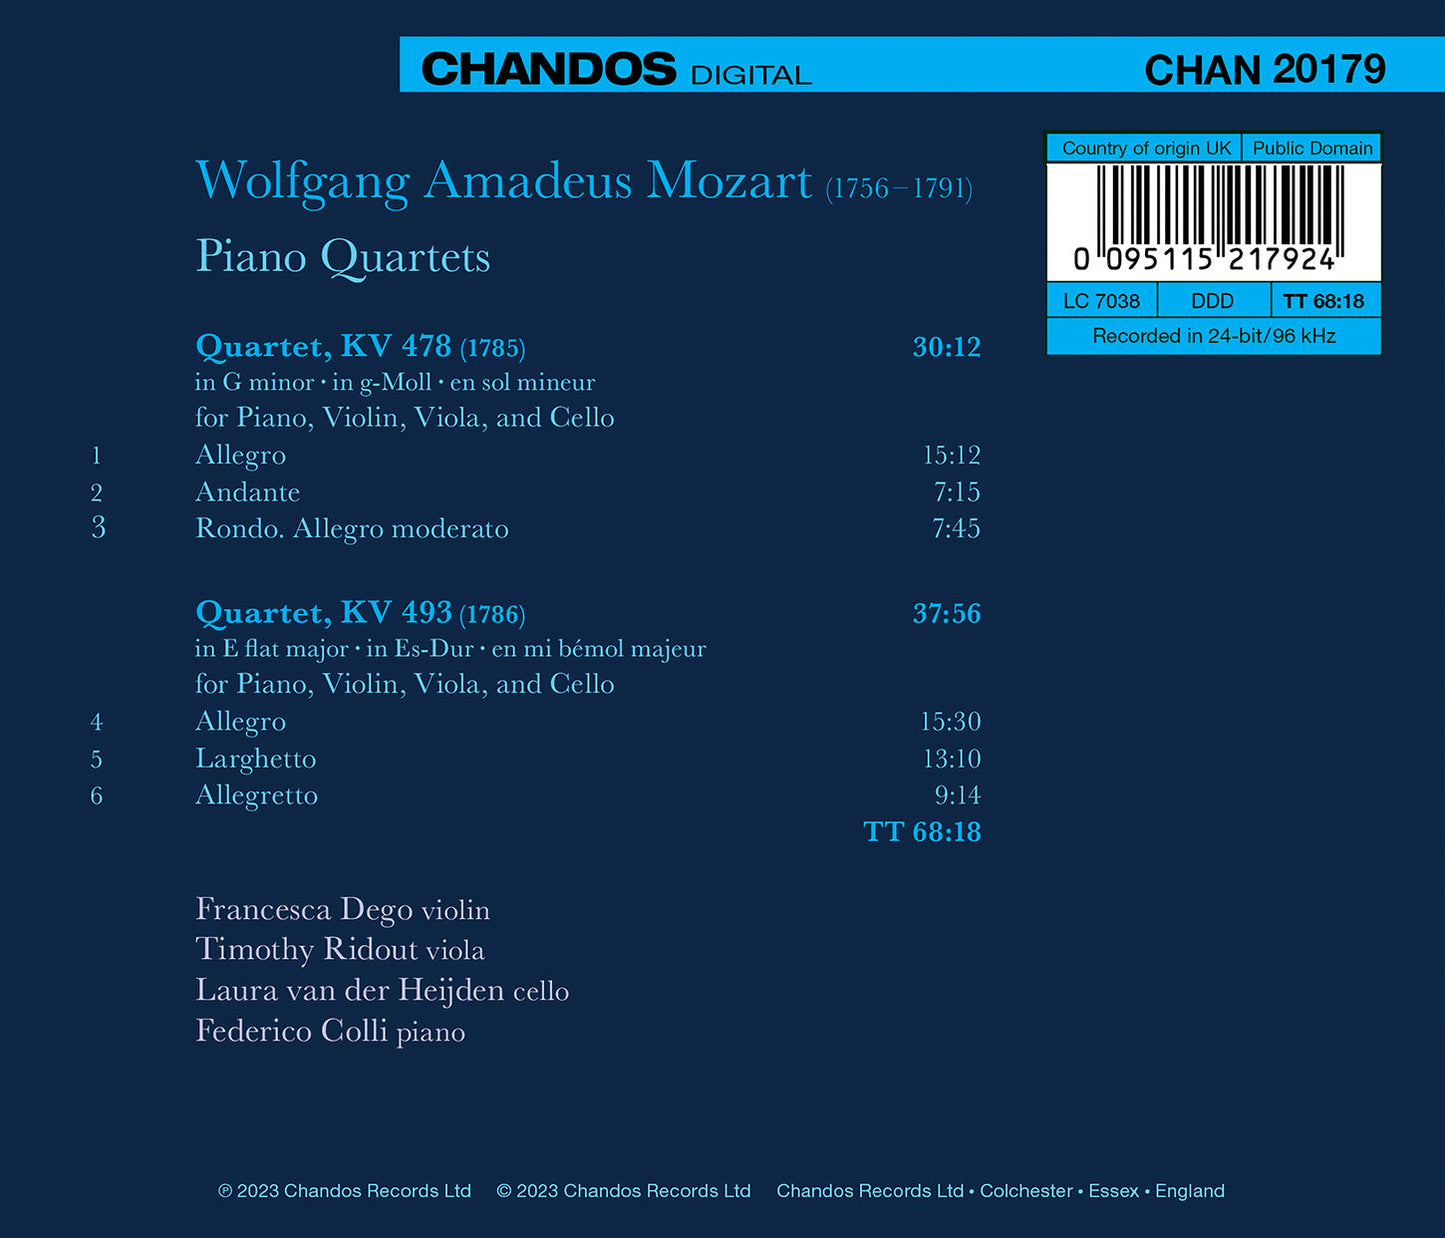 Mozart: The Piano Quartets